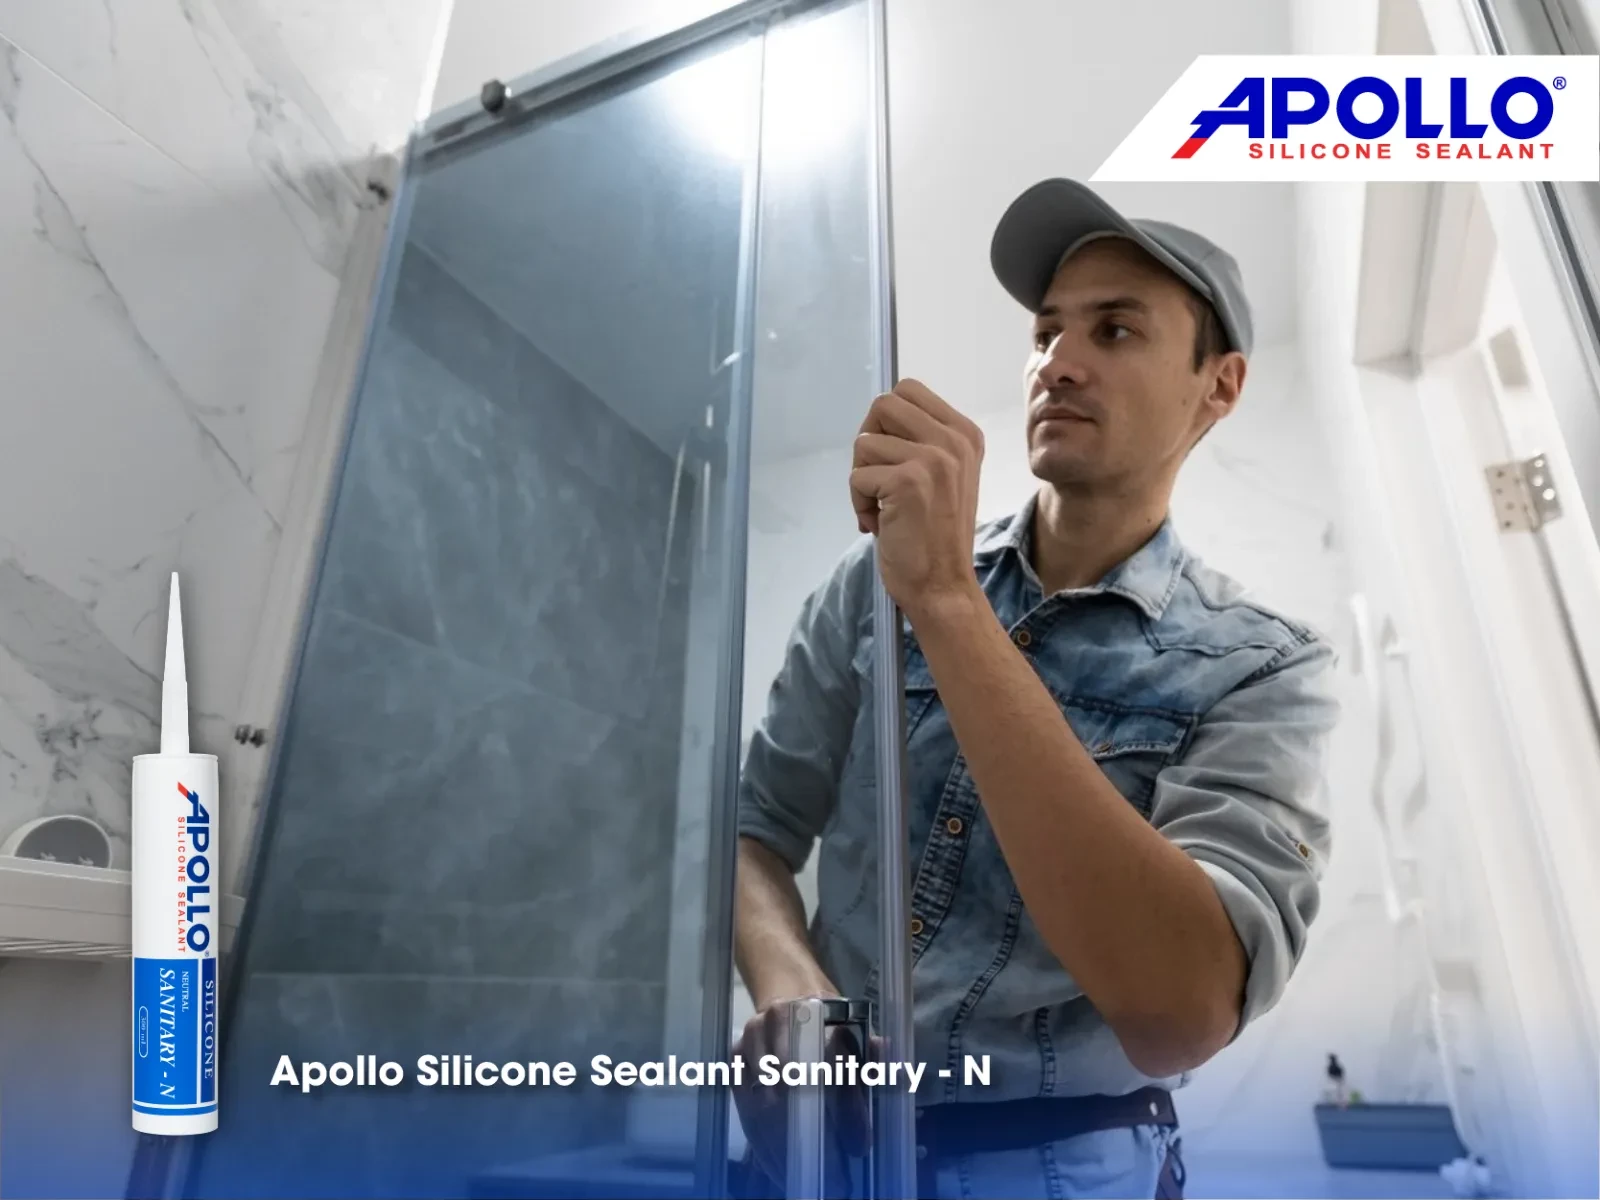 Keo chống thấm Apollo Silicone Sealant Sanitary - N được nhiều thợ thầu tin dùng cho thi công trám vách kính nhà tắm